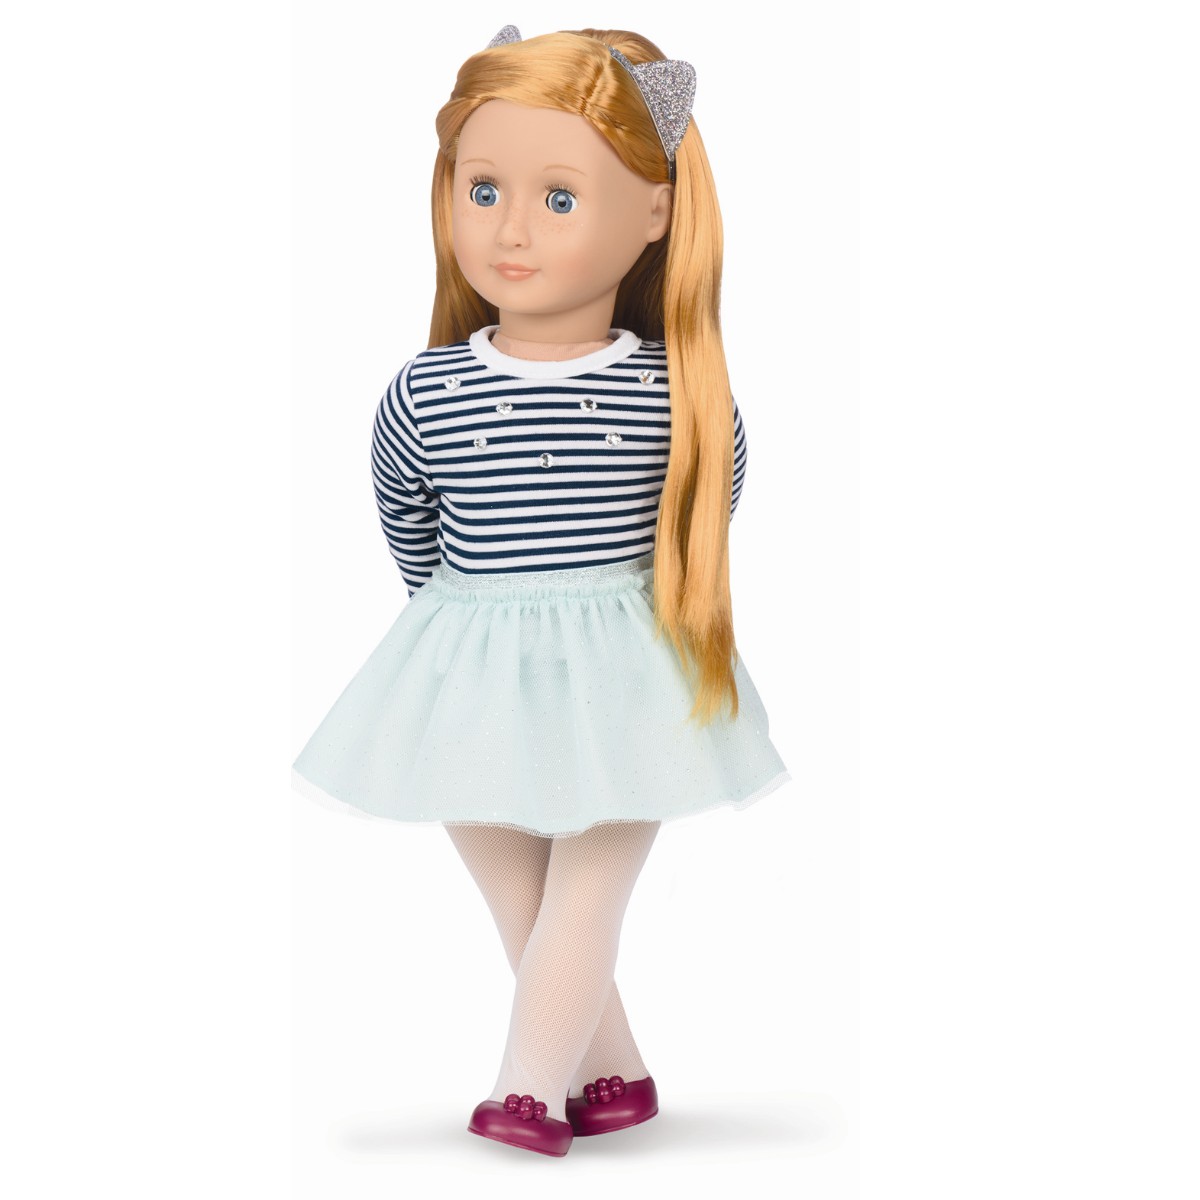 Our Generation - Arlee Puppe mit gestreiften Top und Tütü